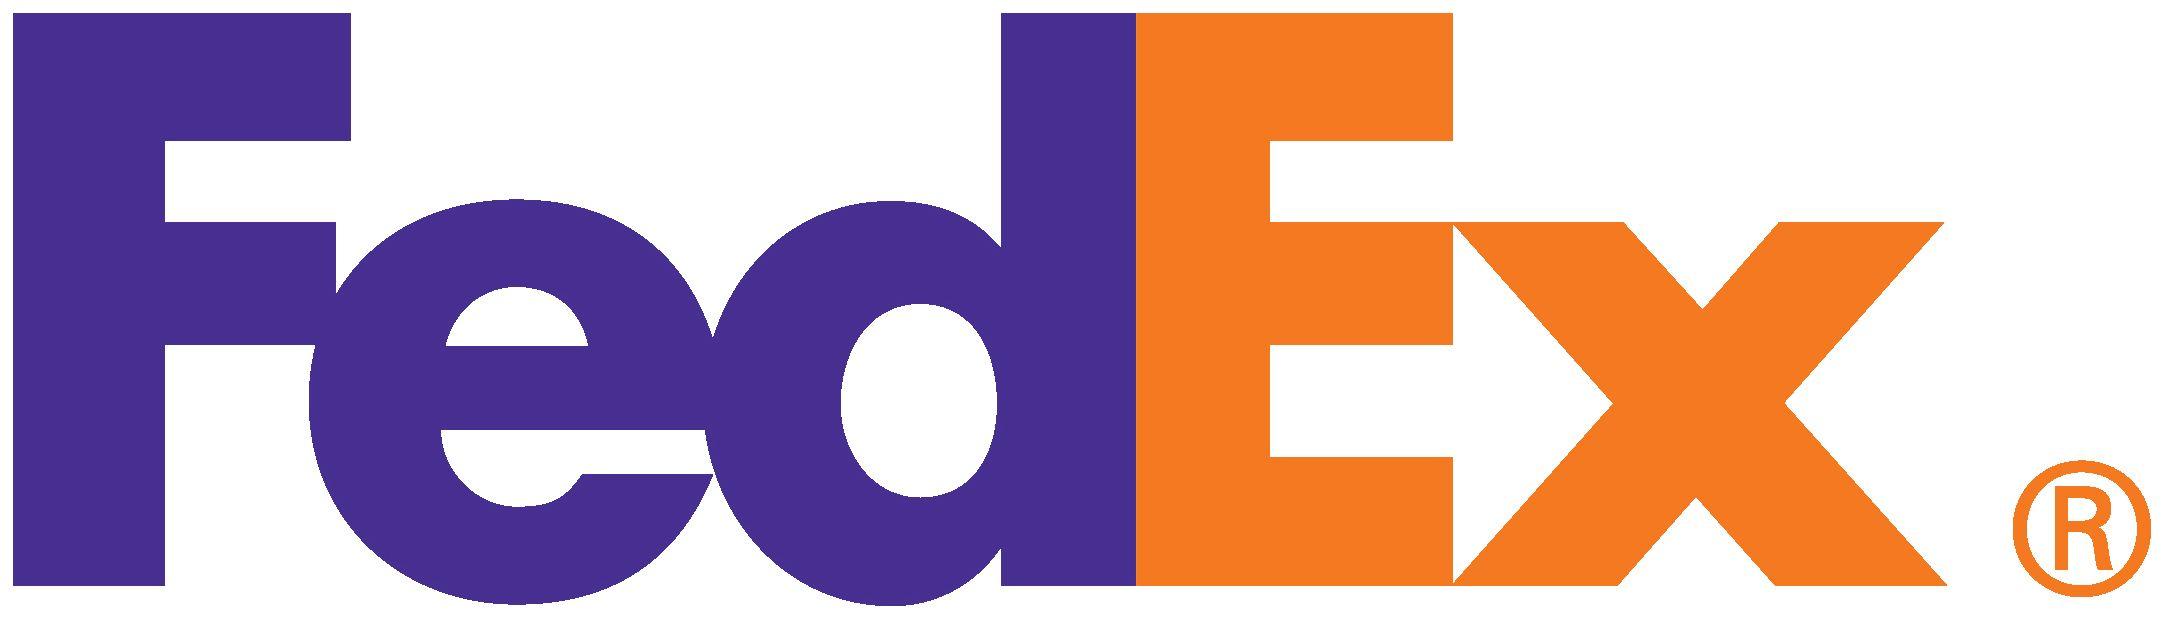 FedEx Loogo Logo - FedEx-logo-big - Facilis Technology